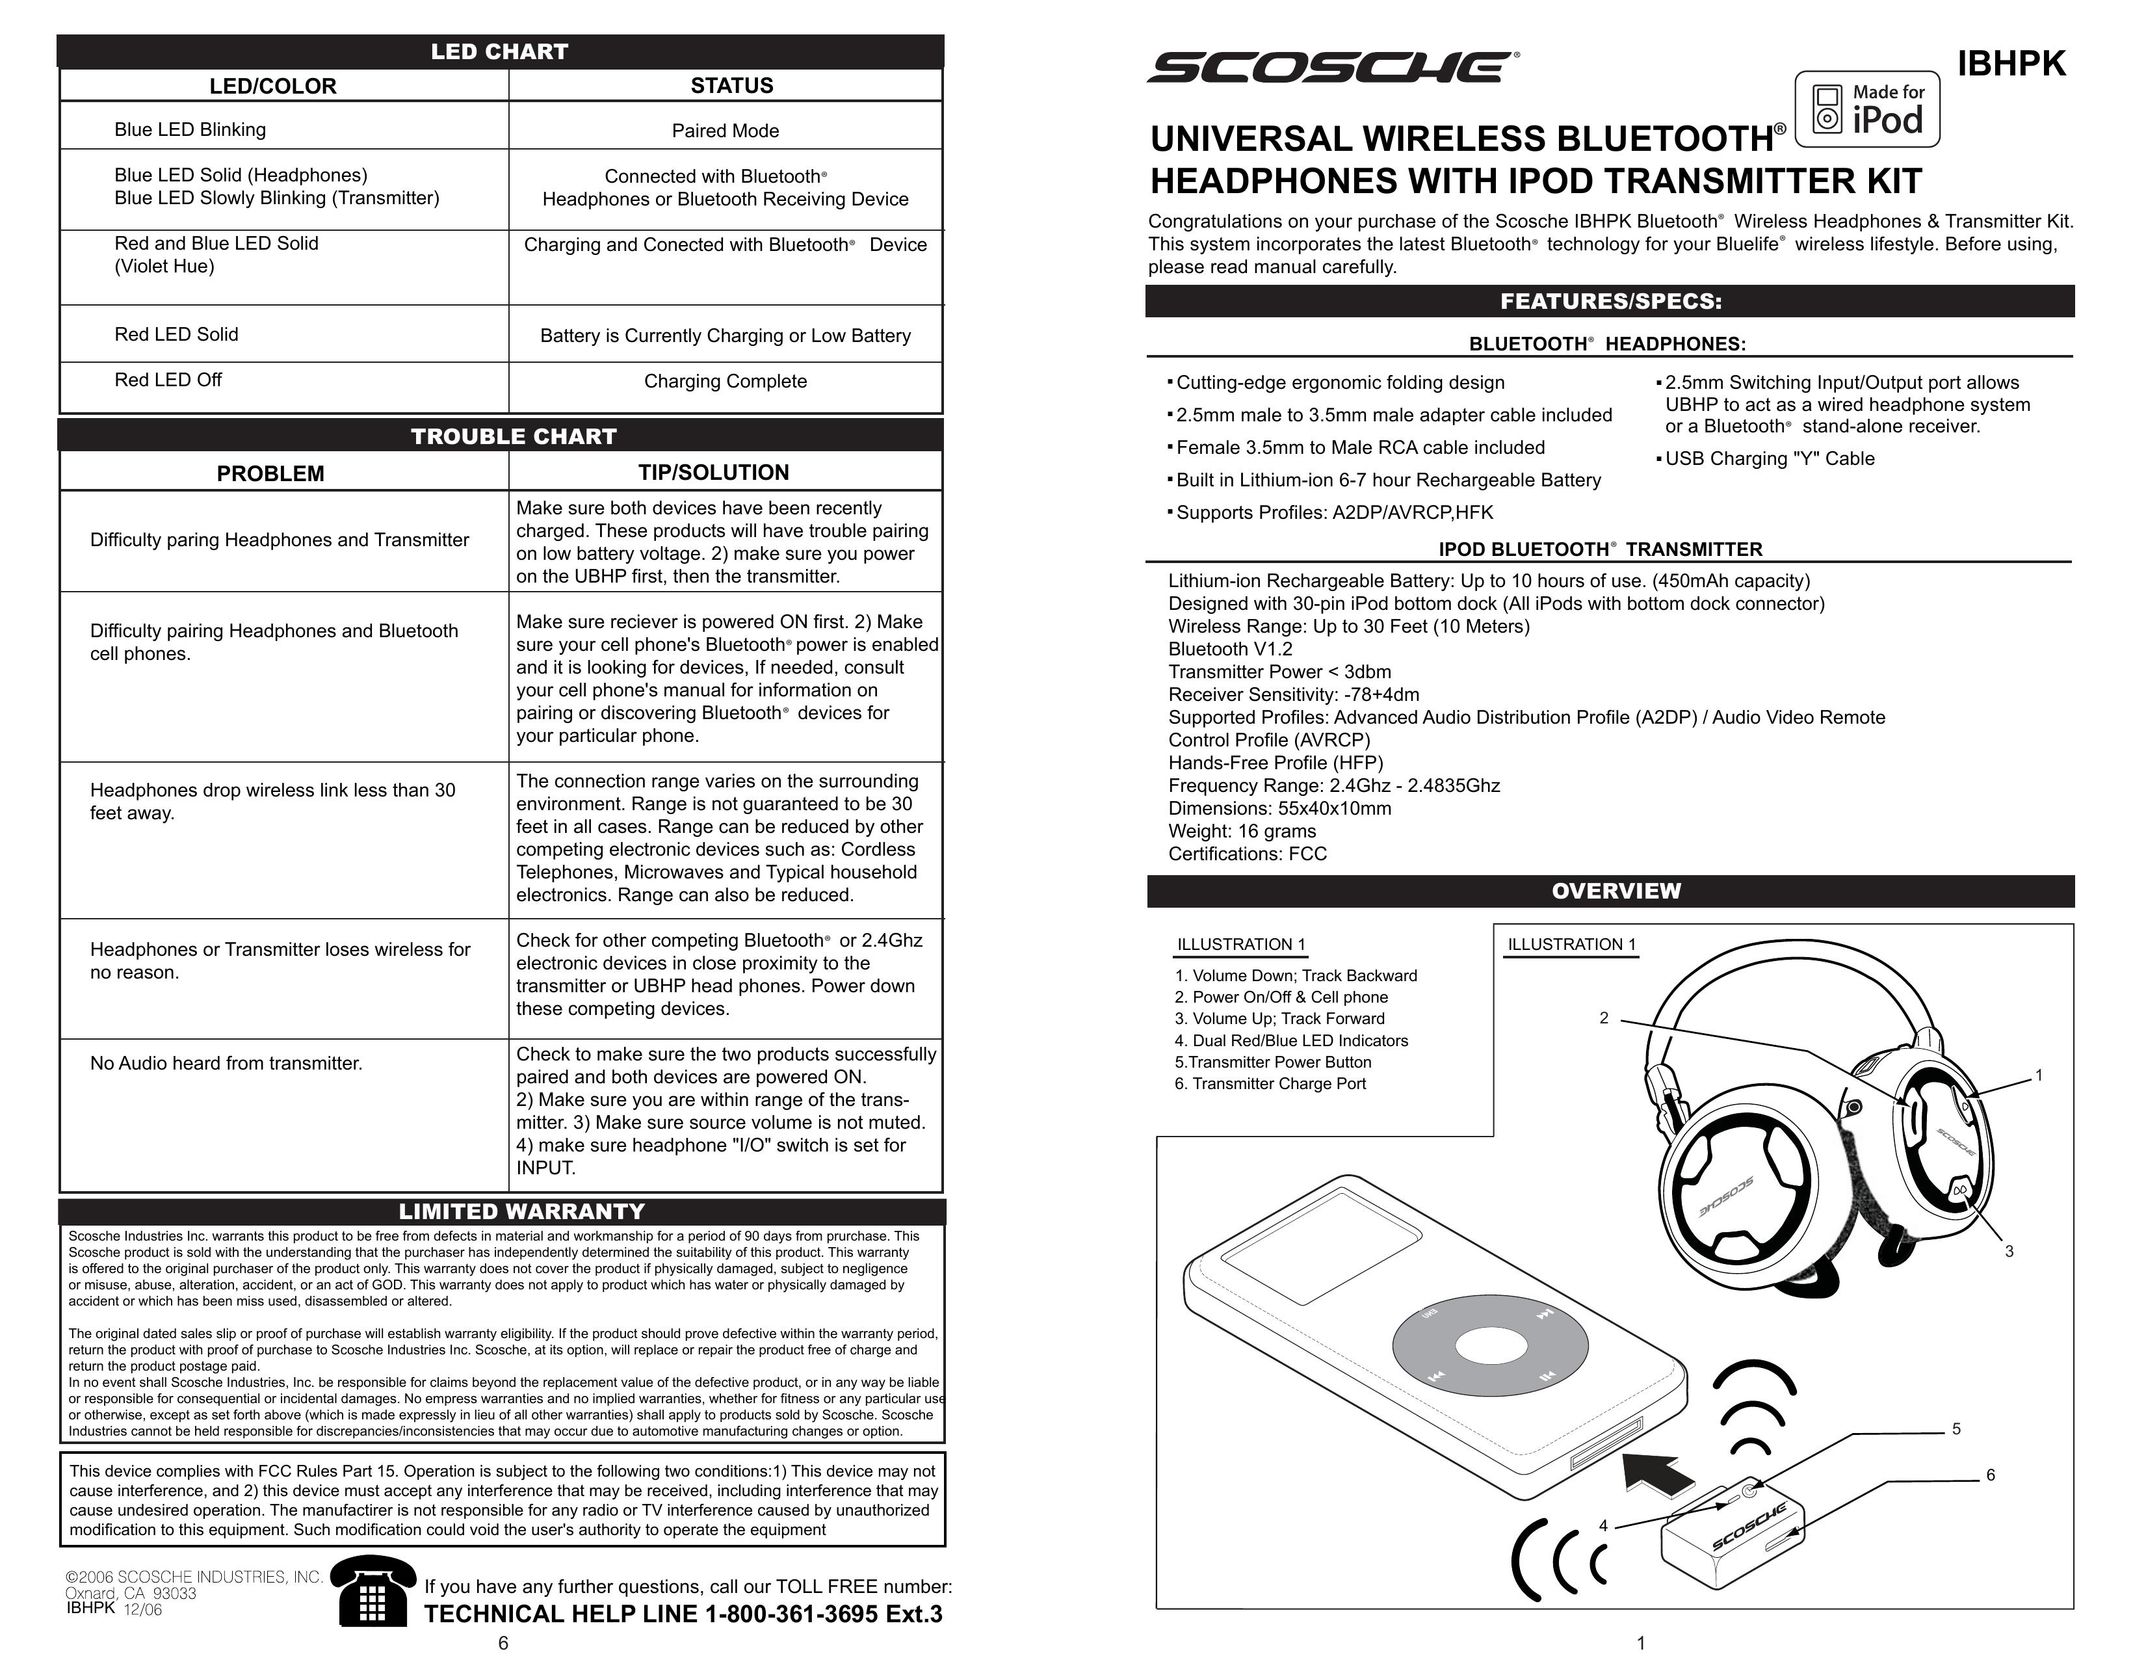 Scosche Industries IBHPK Headphones User Manual